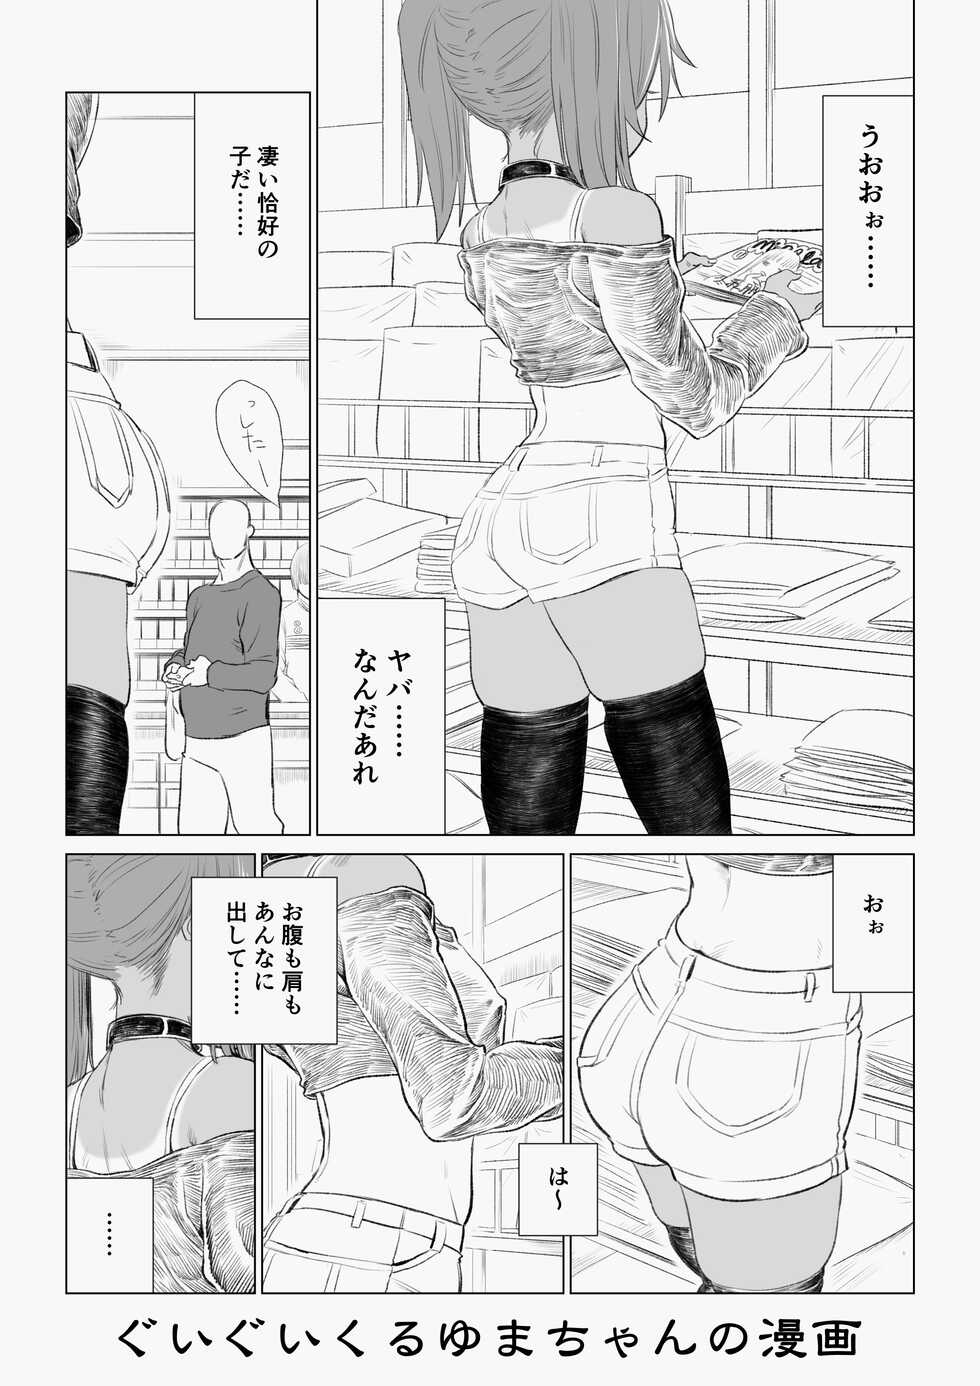 [Ebisujima Misato] Yuma-chan's Web manga [Ongoing] - Page 19